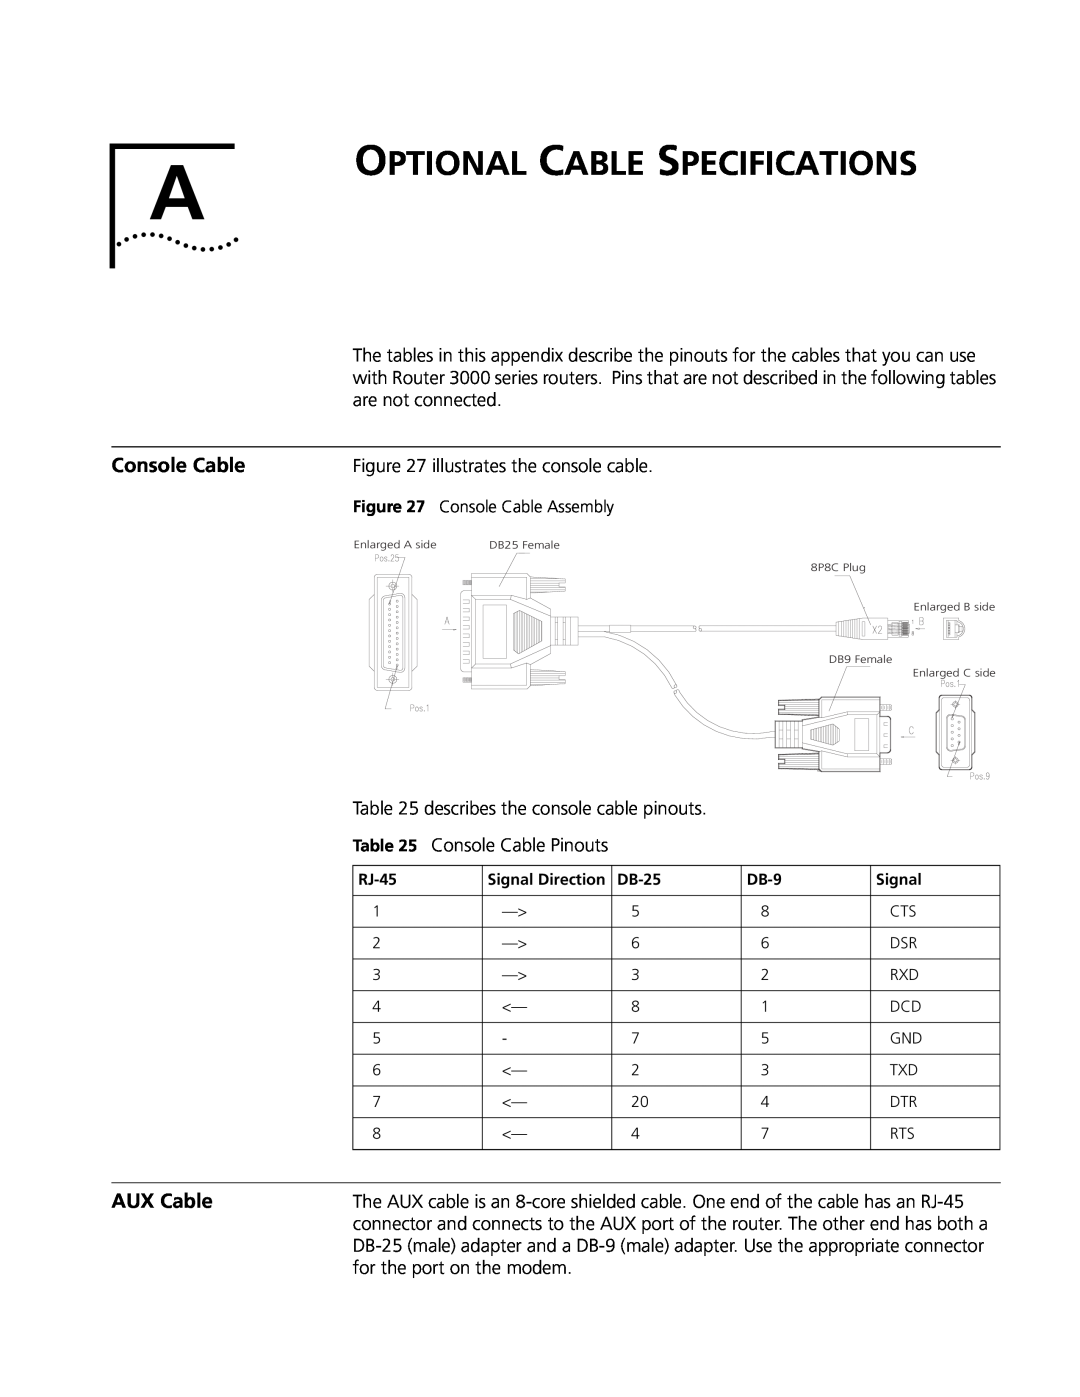 3Com 3013 (3C13613), 3015 (3C13615), 3018 (3C13618), 3012 (3C13612) Optional Cable Specifications, Console Cable, AUX Cable 